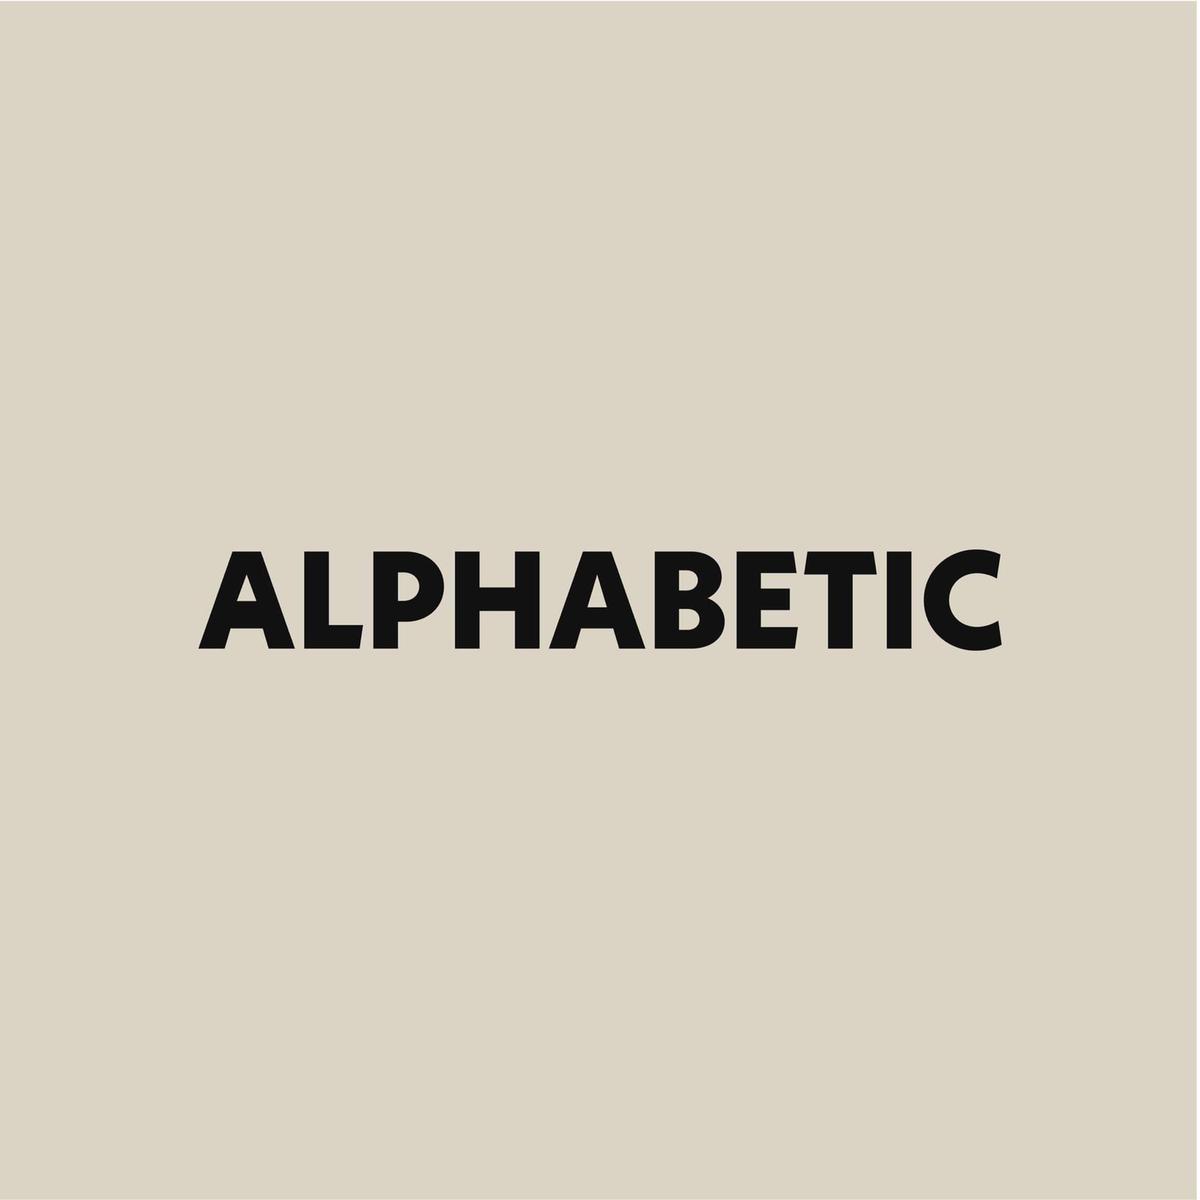 Alphabetic.co